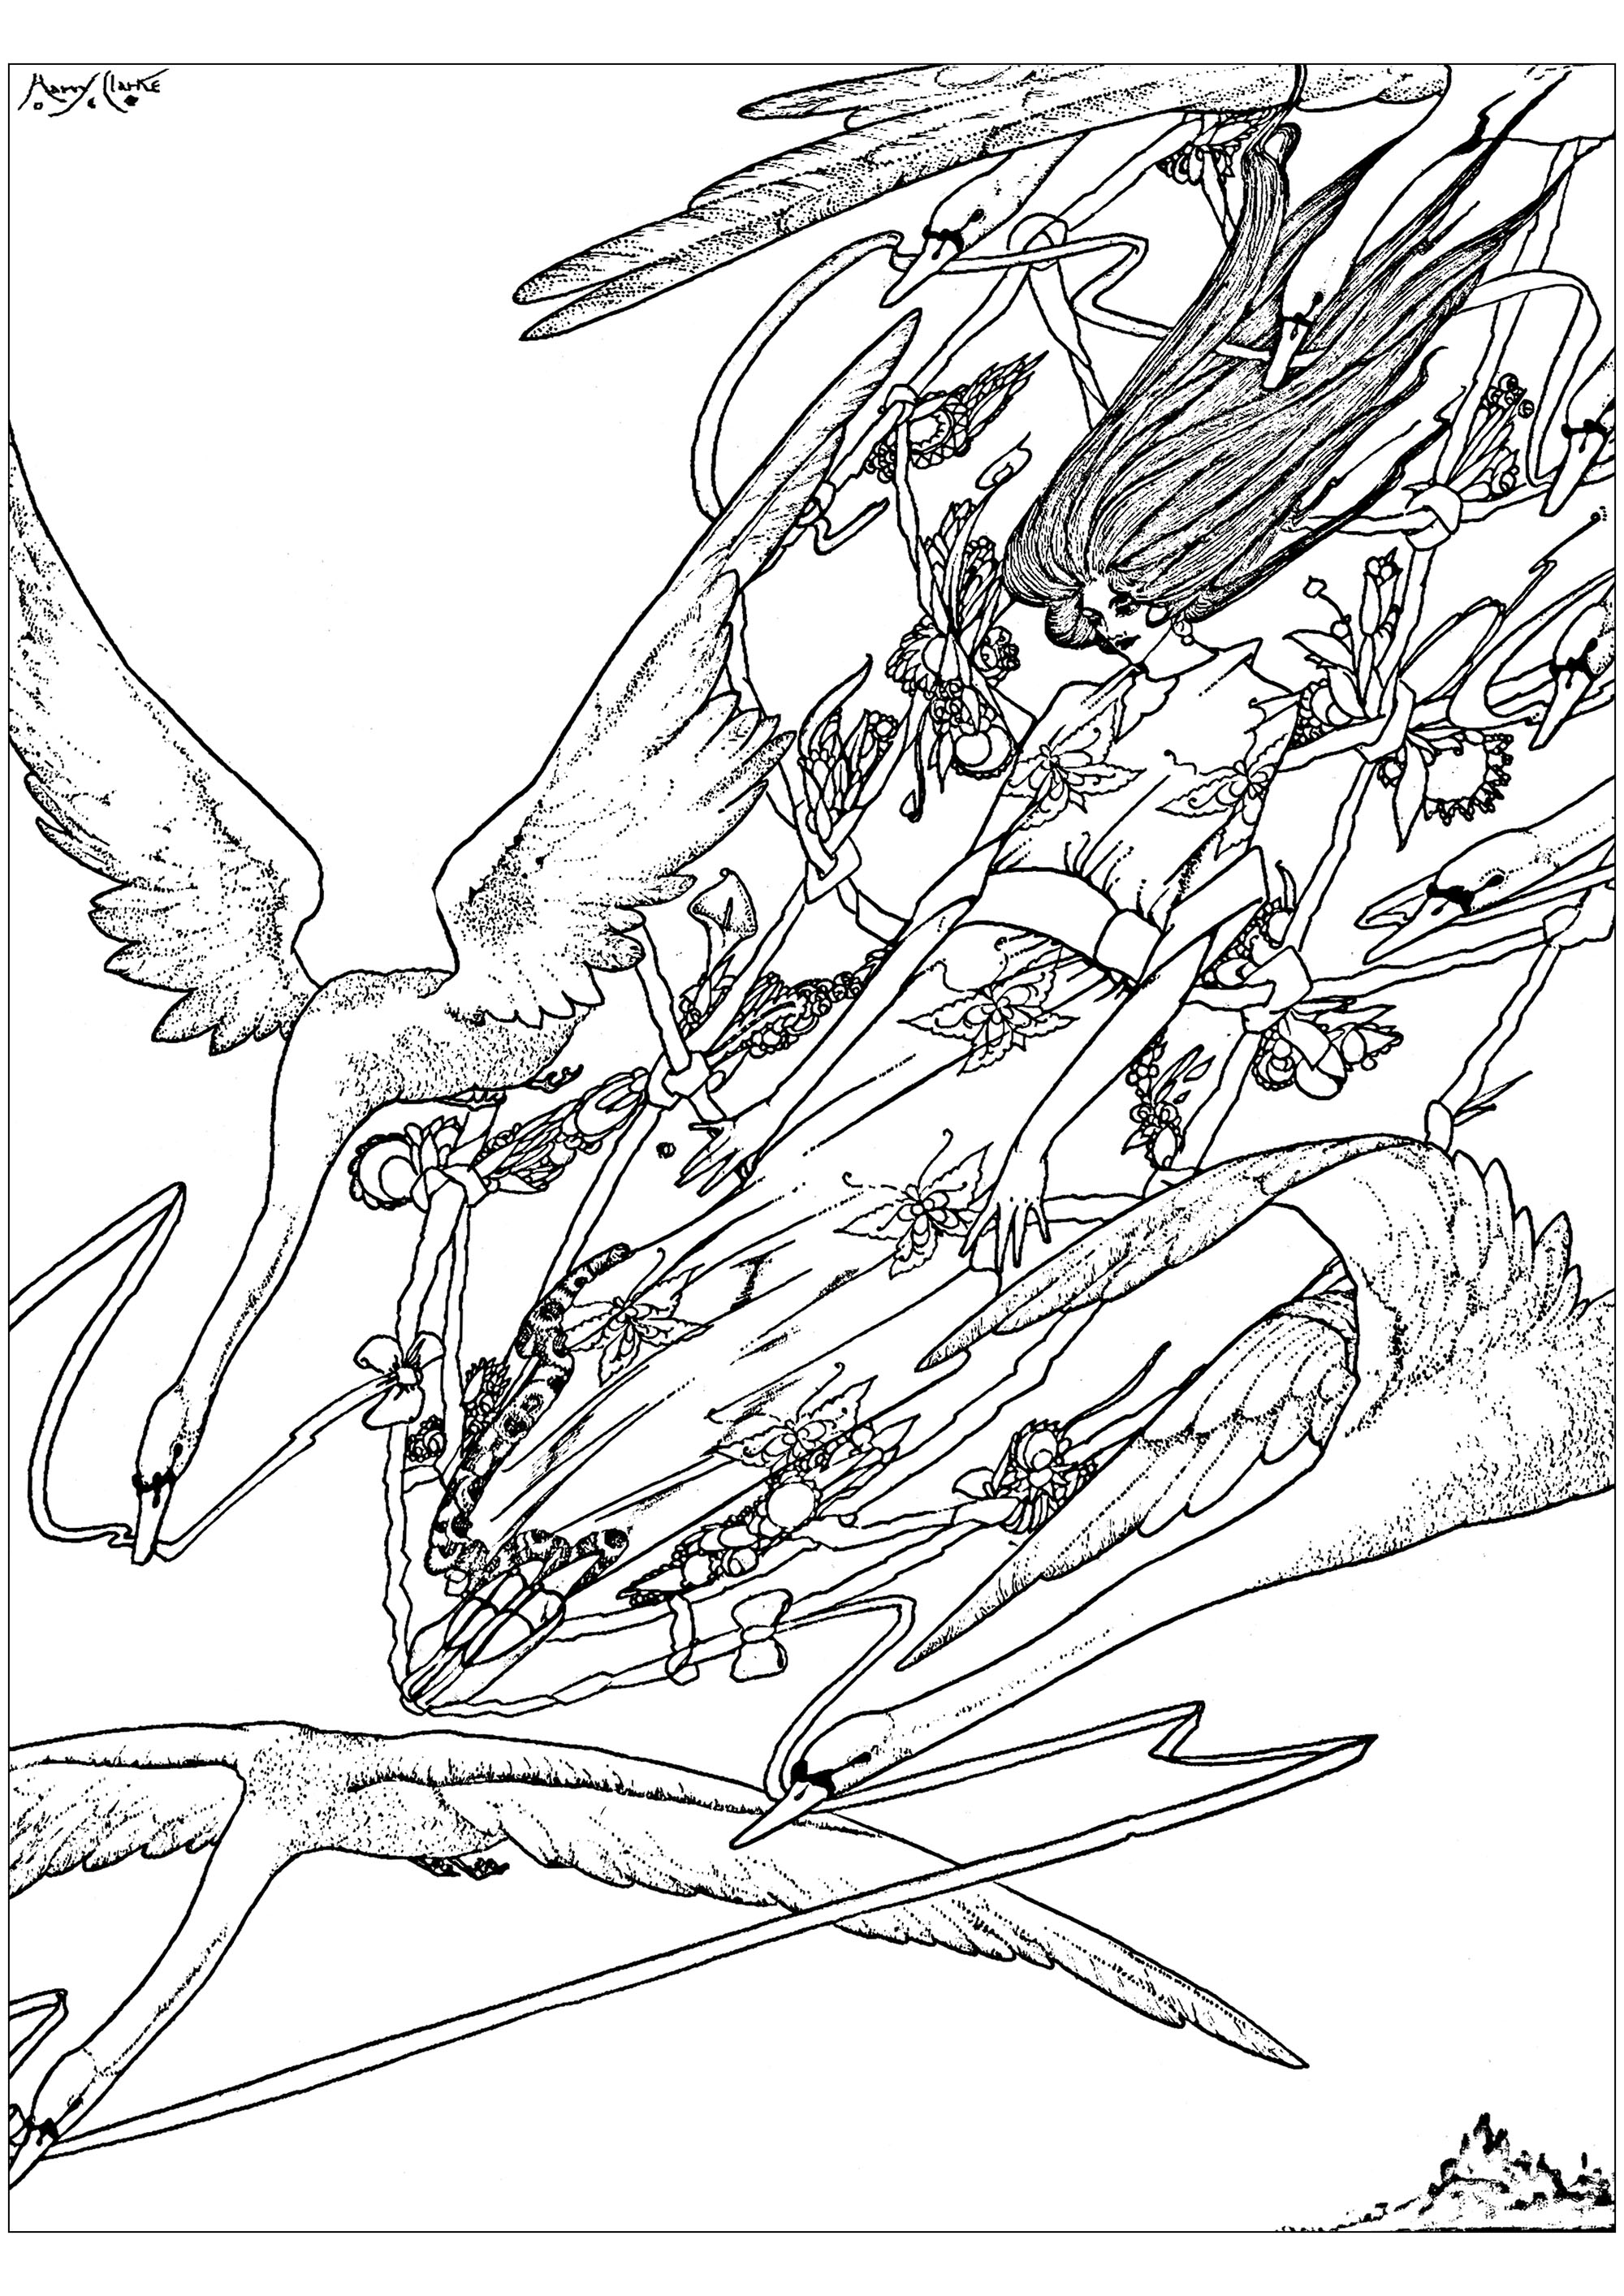 Coloriage créé à partir d'une illustration de Harry Clarke de 1916, pour illustrer 'Les oies sauvages', conte de fées de Hans Christian Andersen. Cette oeuvre est inspirée du style Arts and Crafts.